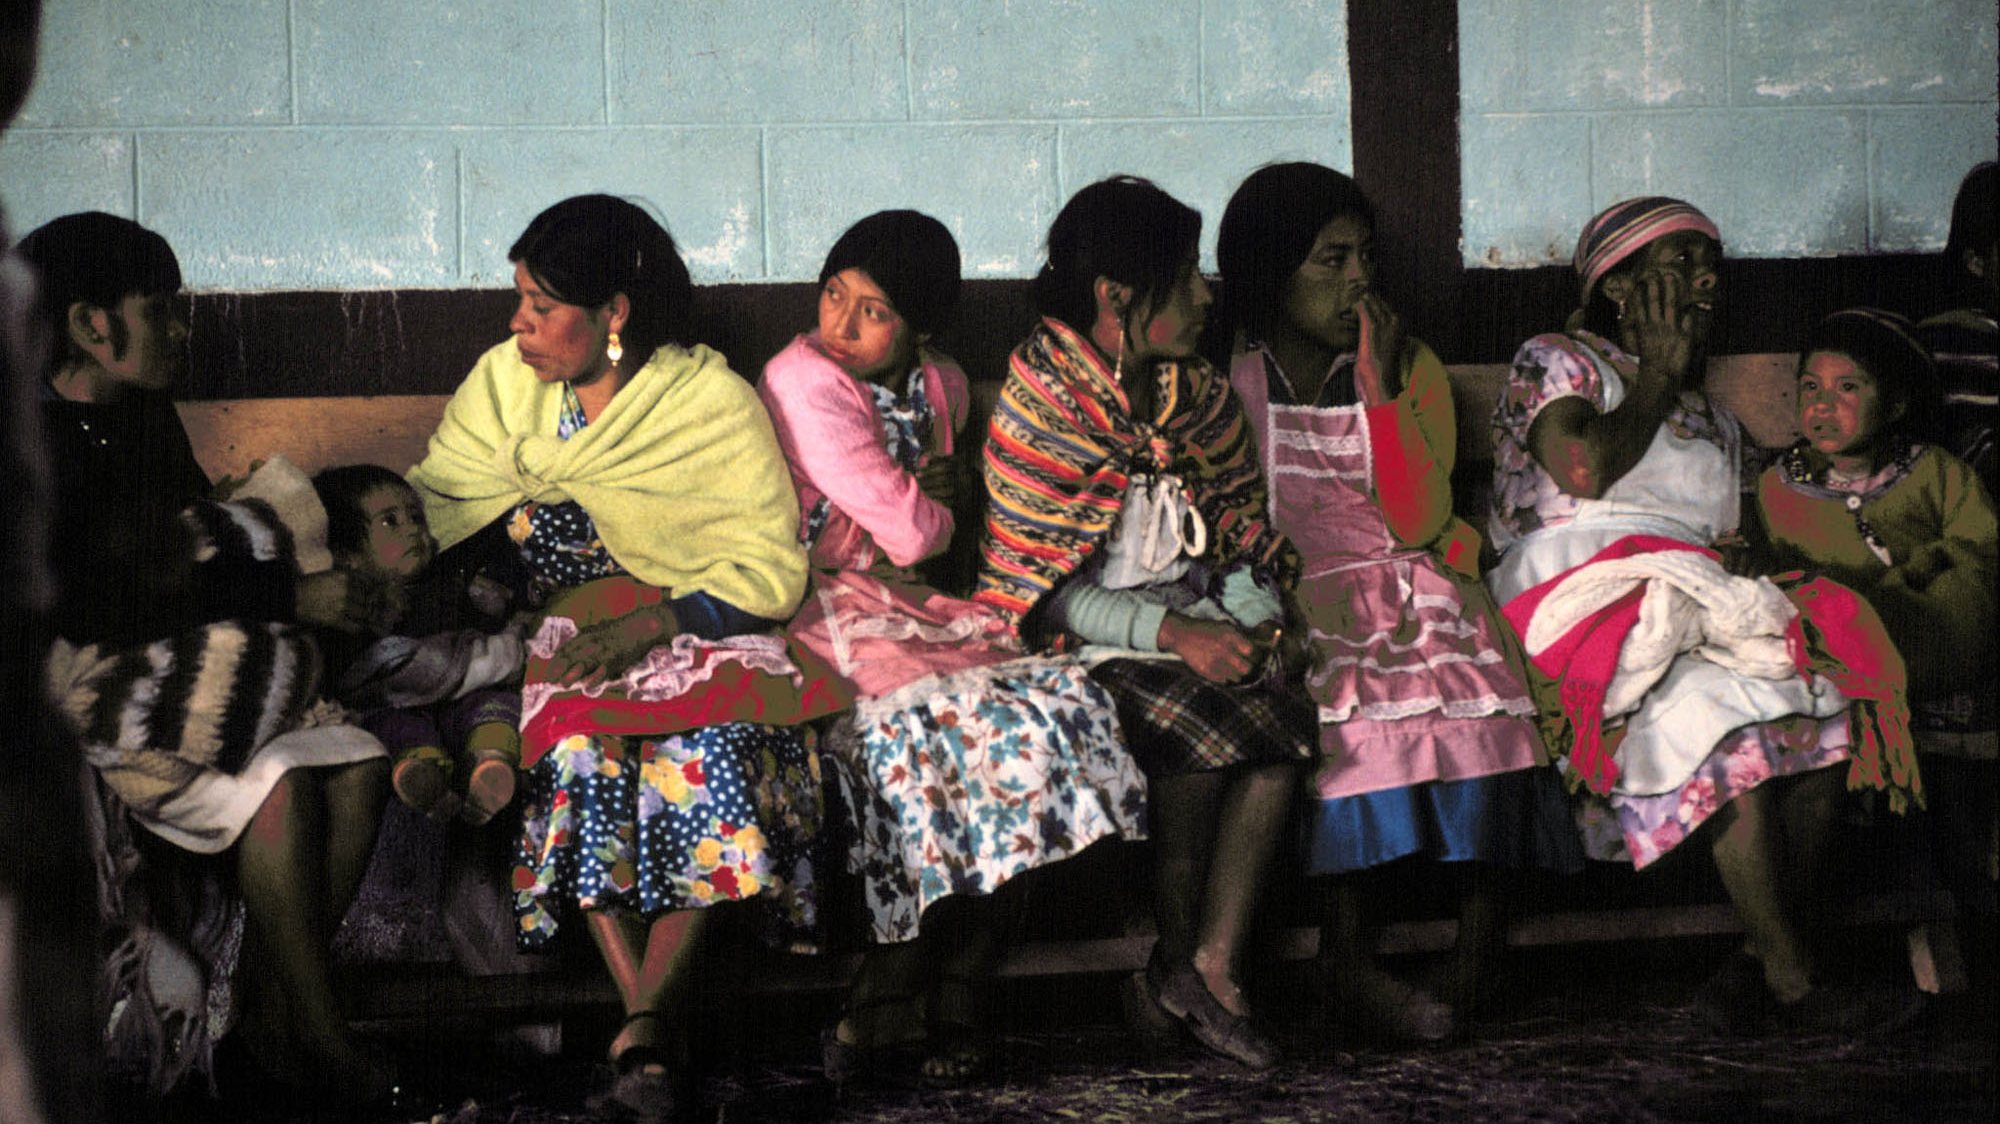 Mulheres indígenas descendentes dos Maias, no Guatemala